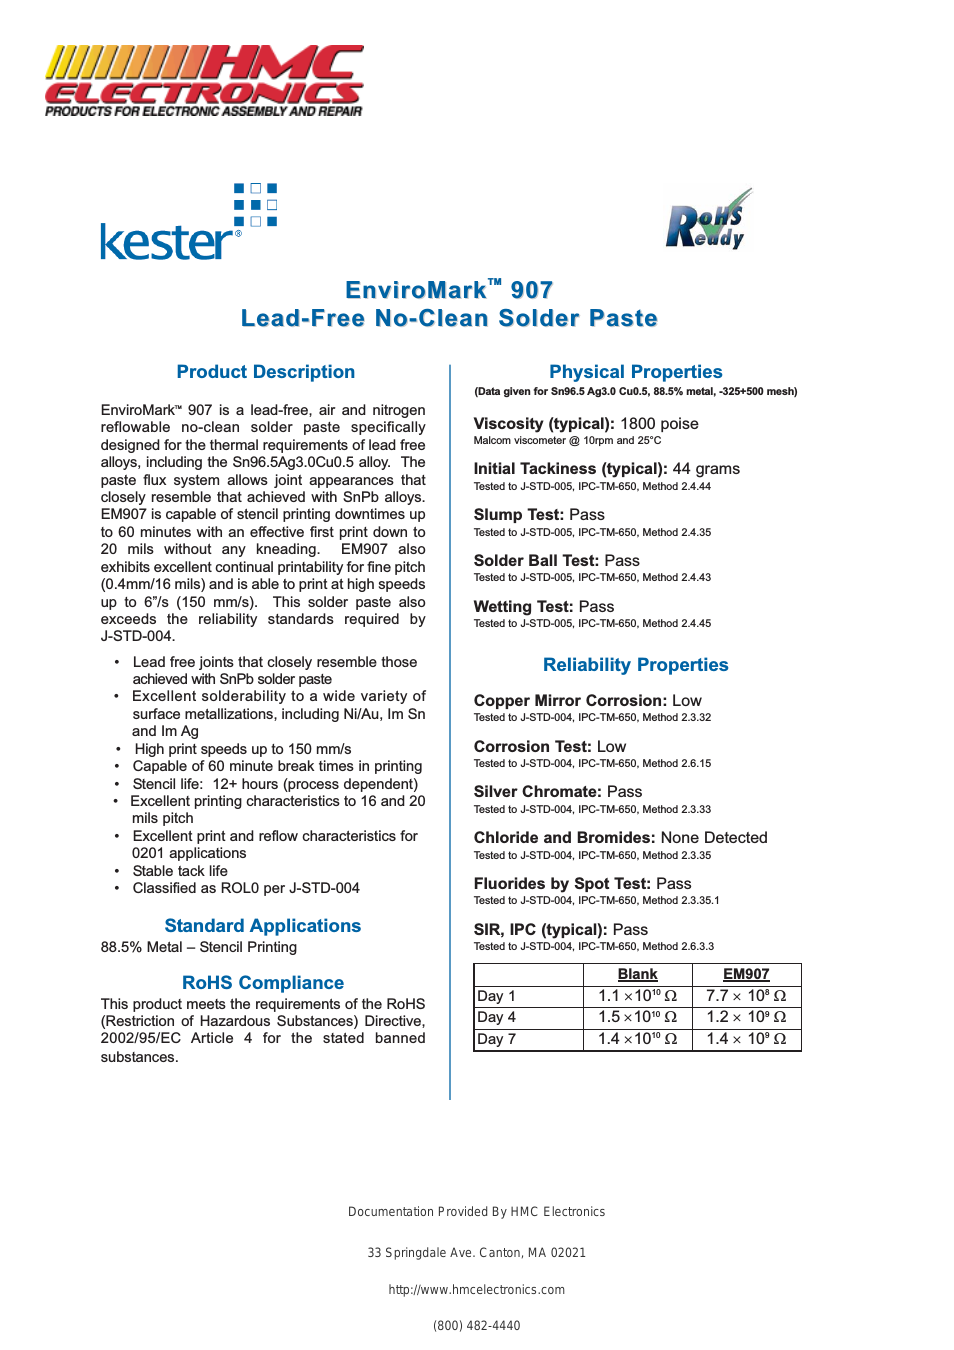 EM907 Kester Lead-Free Solder Paste